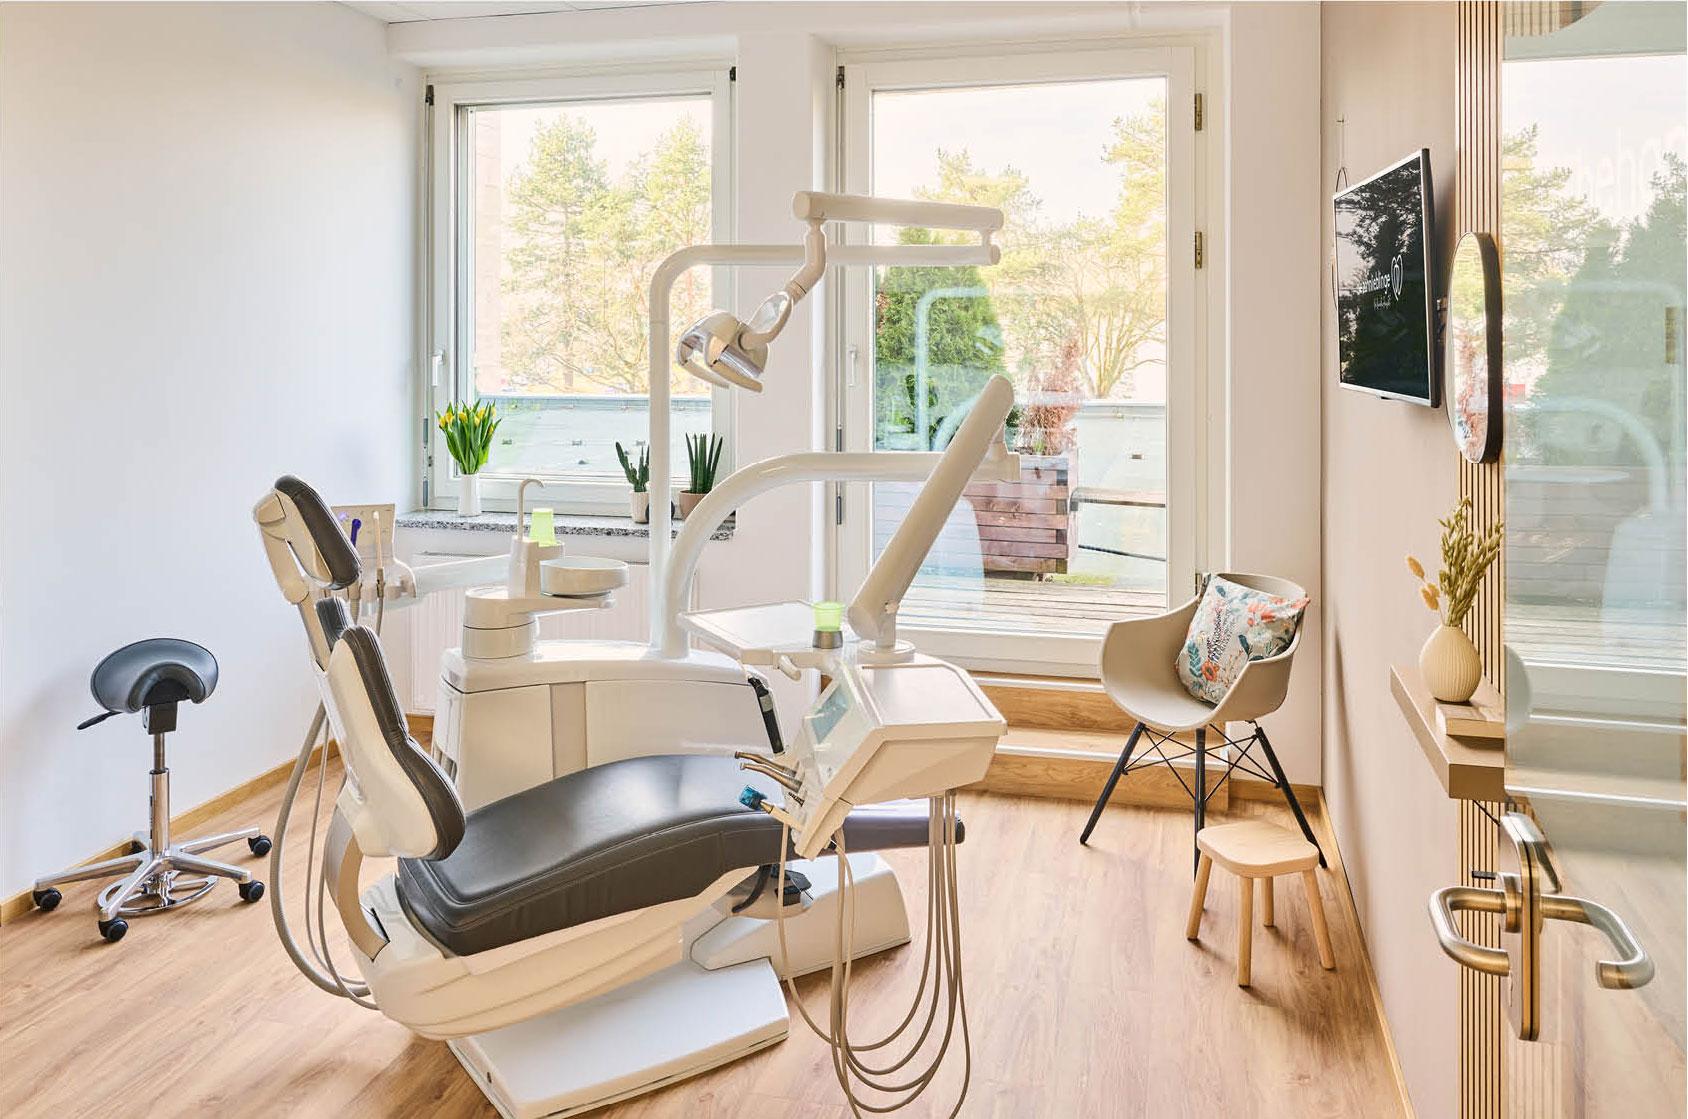 Der helle, warm eingerichtete Behandlungsraum der Zahnarztpraxis zahnlieblinge grenzt führt auf einen Balkon